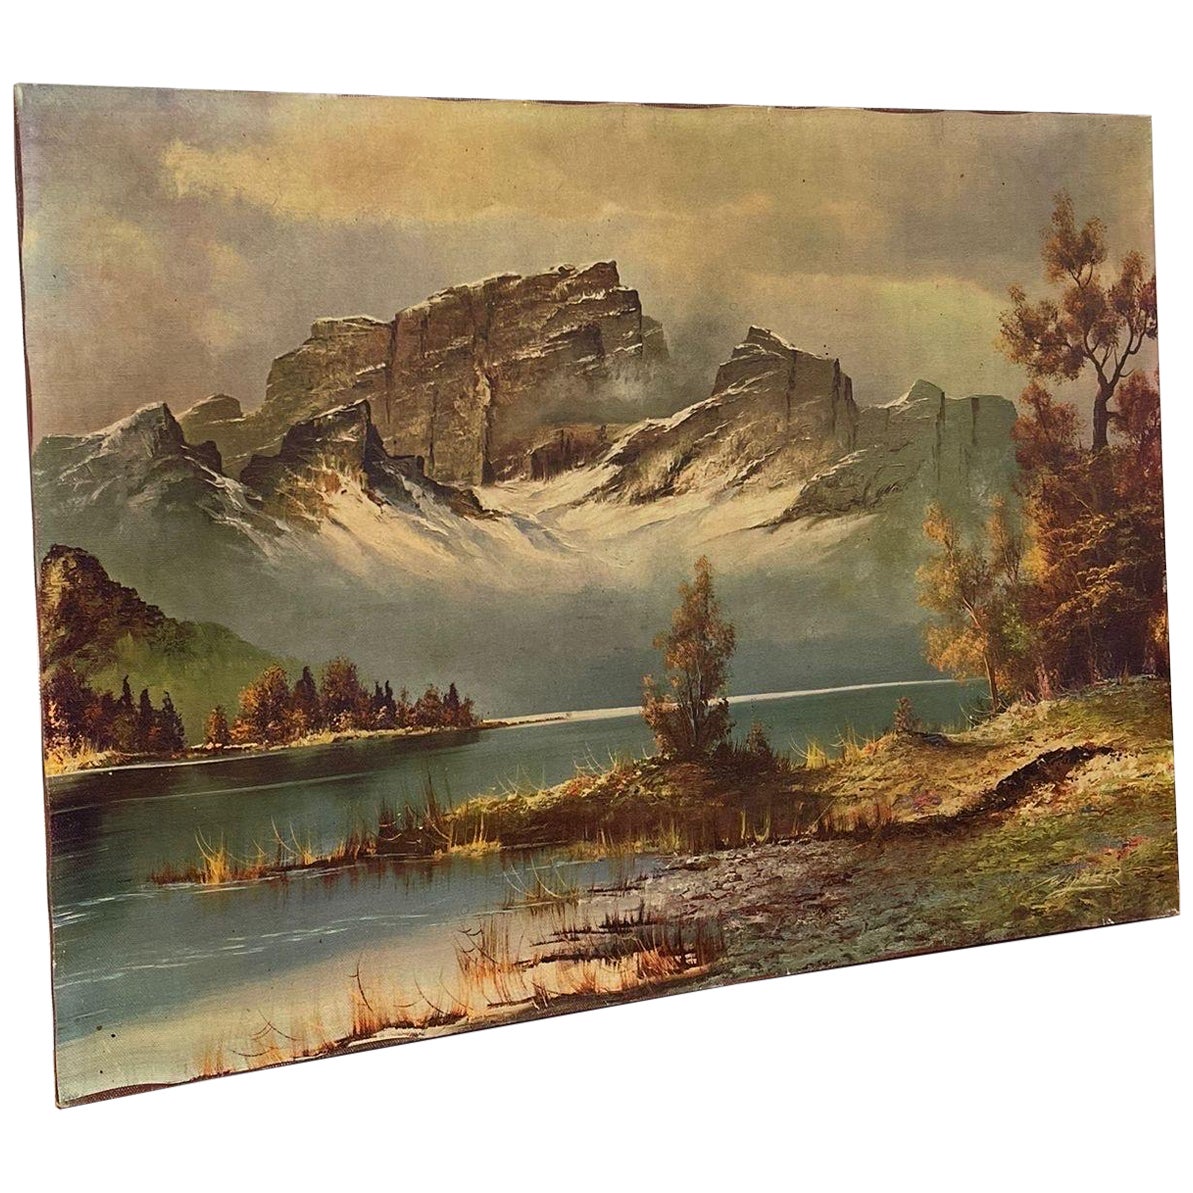 Vintage-Landschaftsdruck auf Leinwand. Berge über einem See.